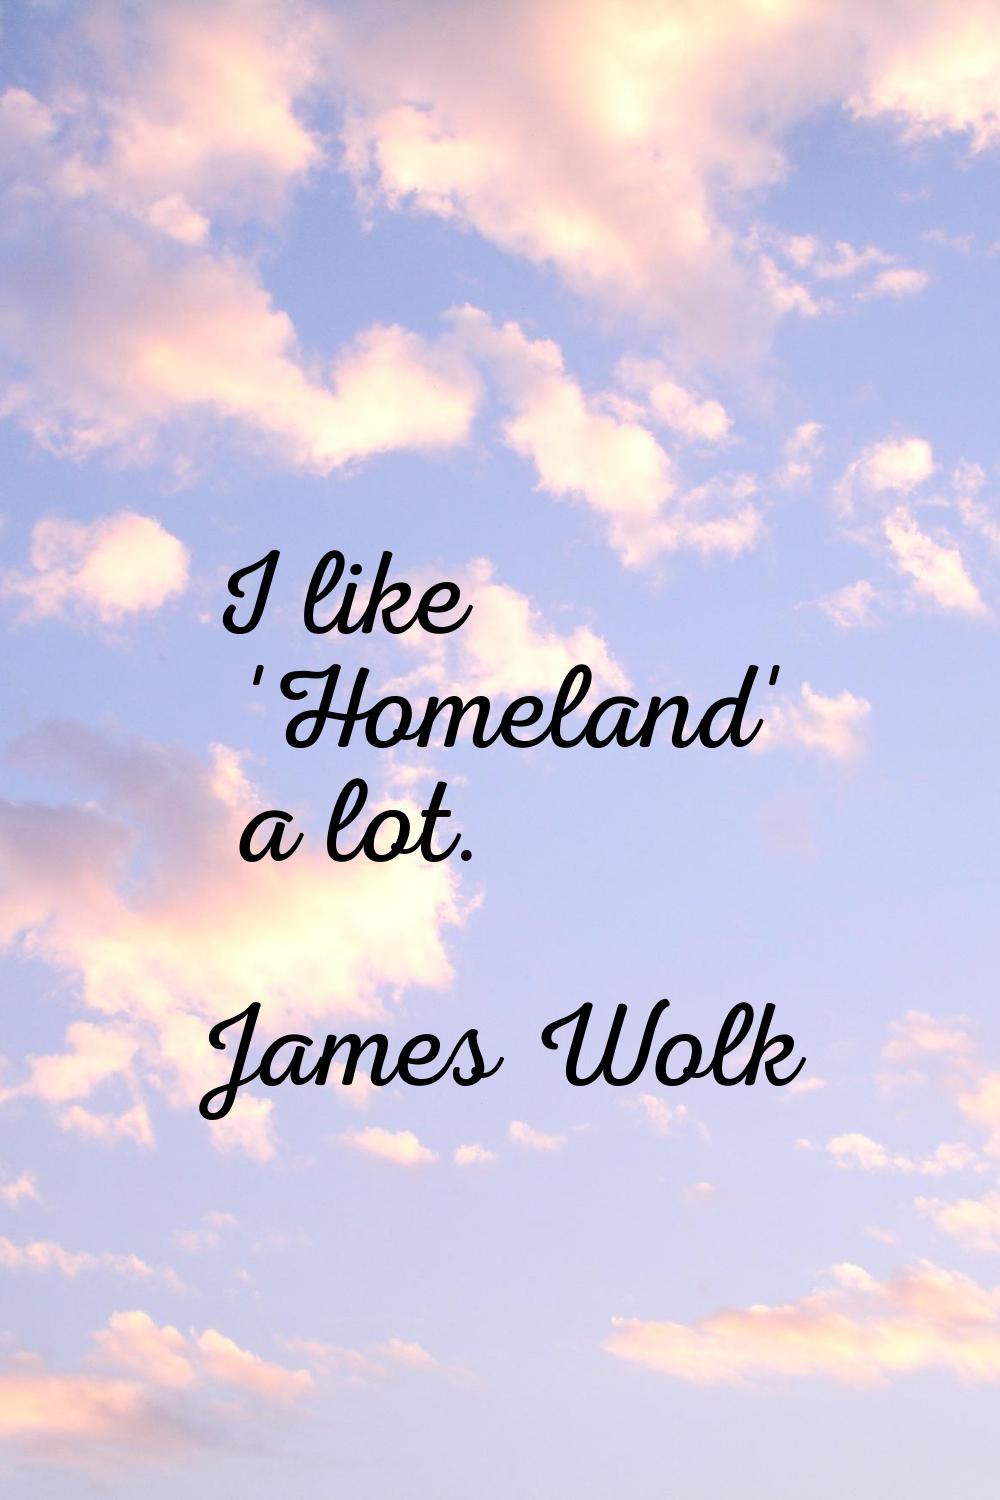 I like 'Homeland' a lot.